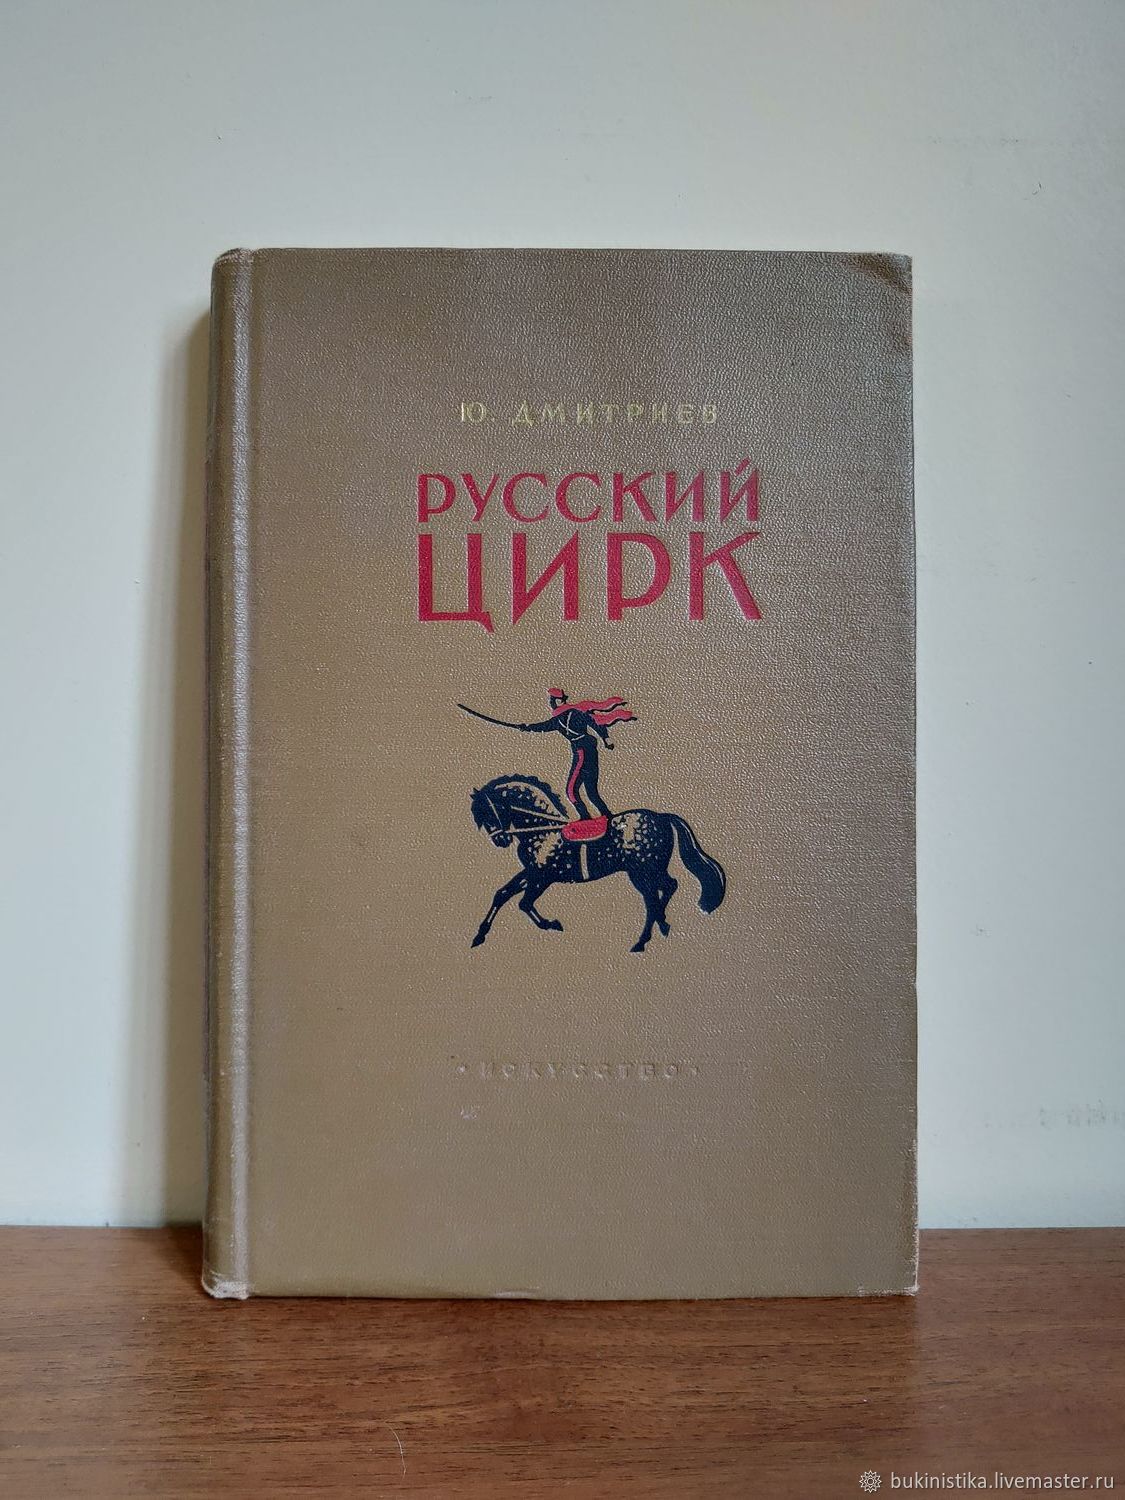 Книга 1953 года. Книги 1953. Дмитриев ю. русский цирк. 1953.